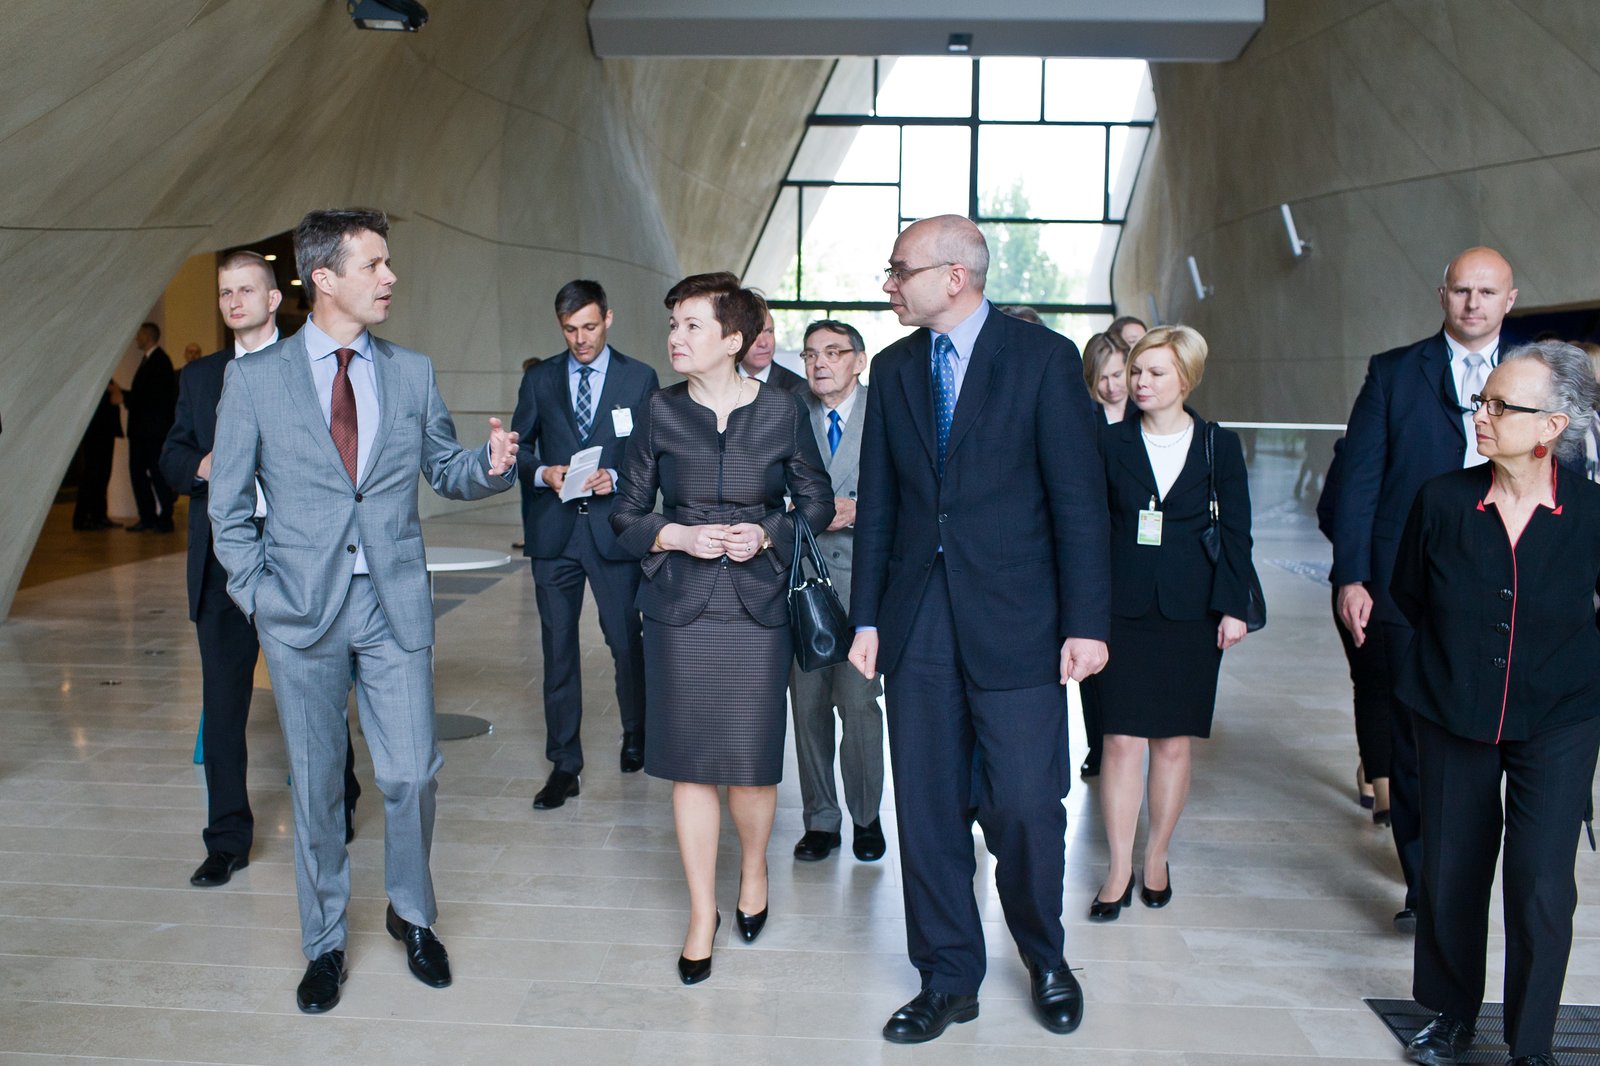 Wizyta księcia Danii w Muzeum POLIN. Grupa osób na korytarzu.